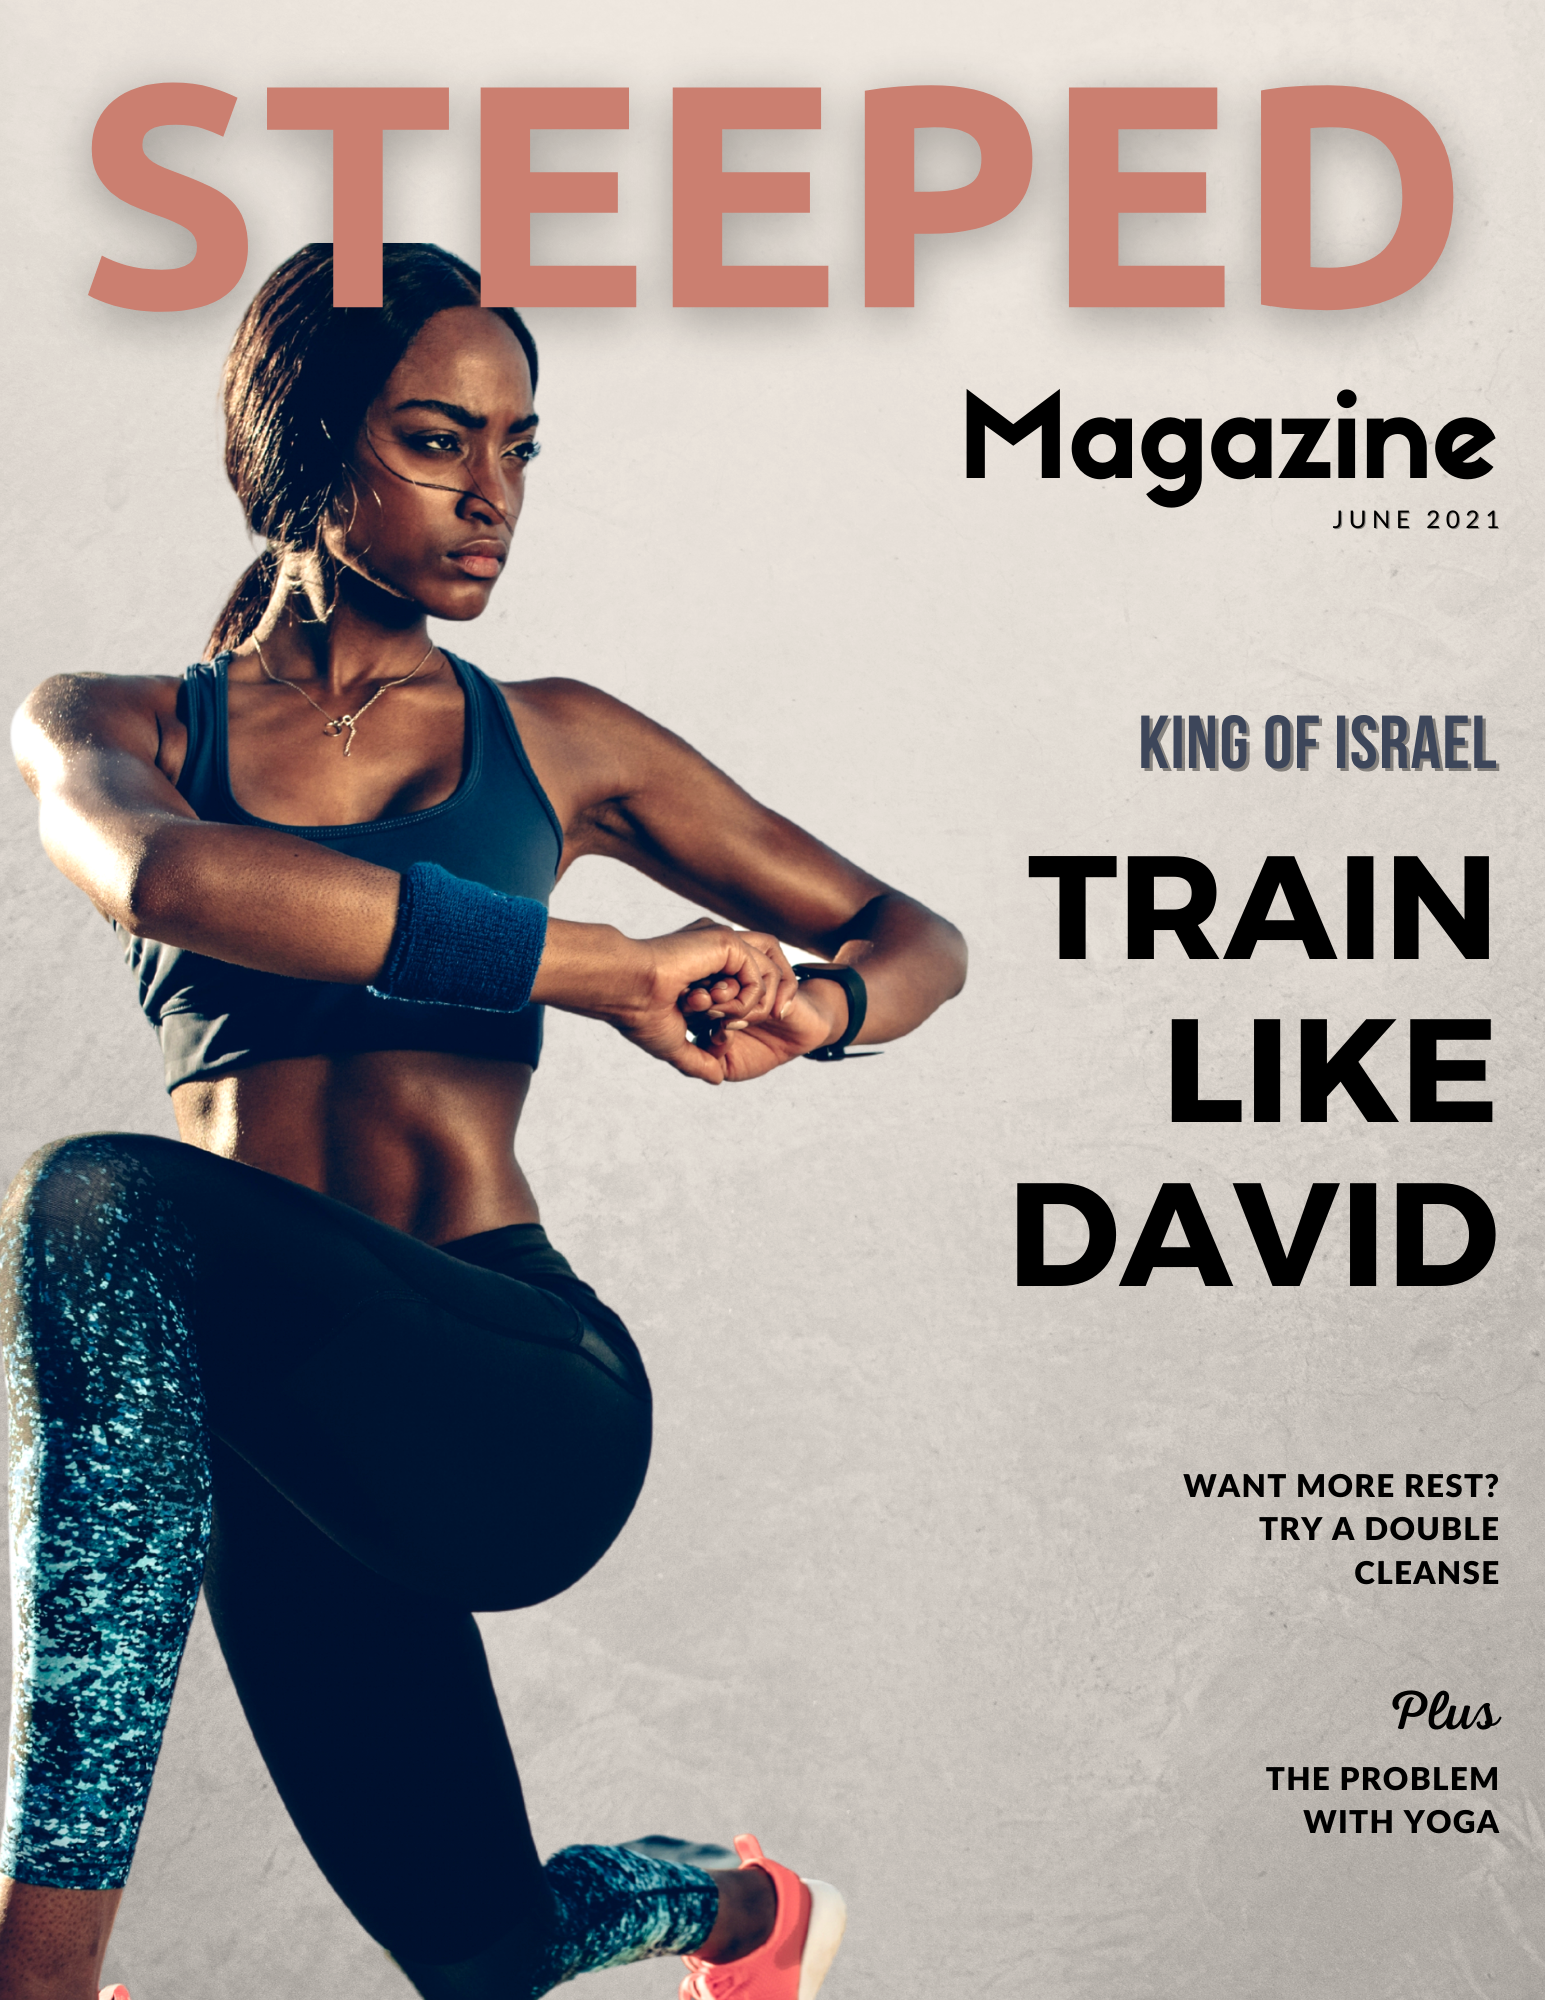 Steeped Magazine - Train Like David